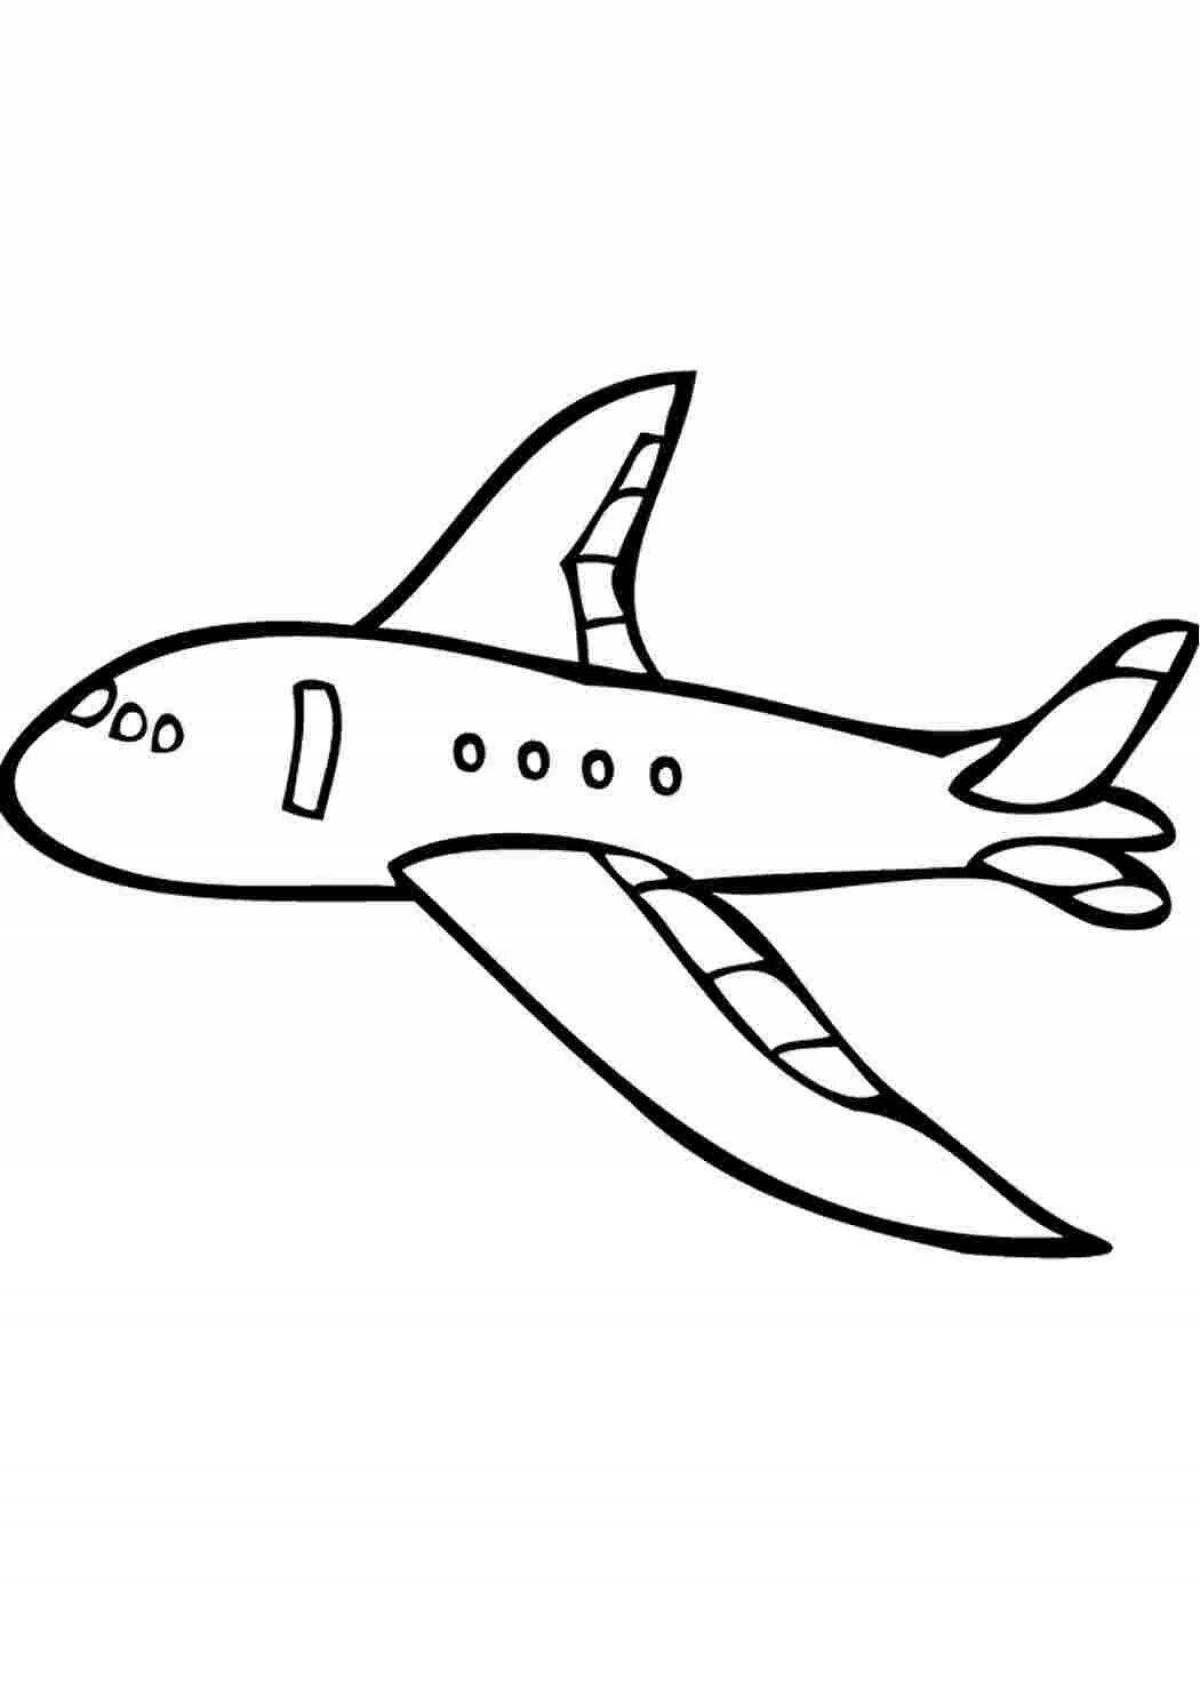 Изображение самолета рисунок